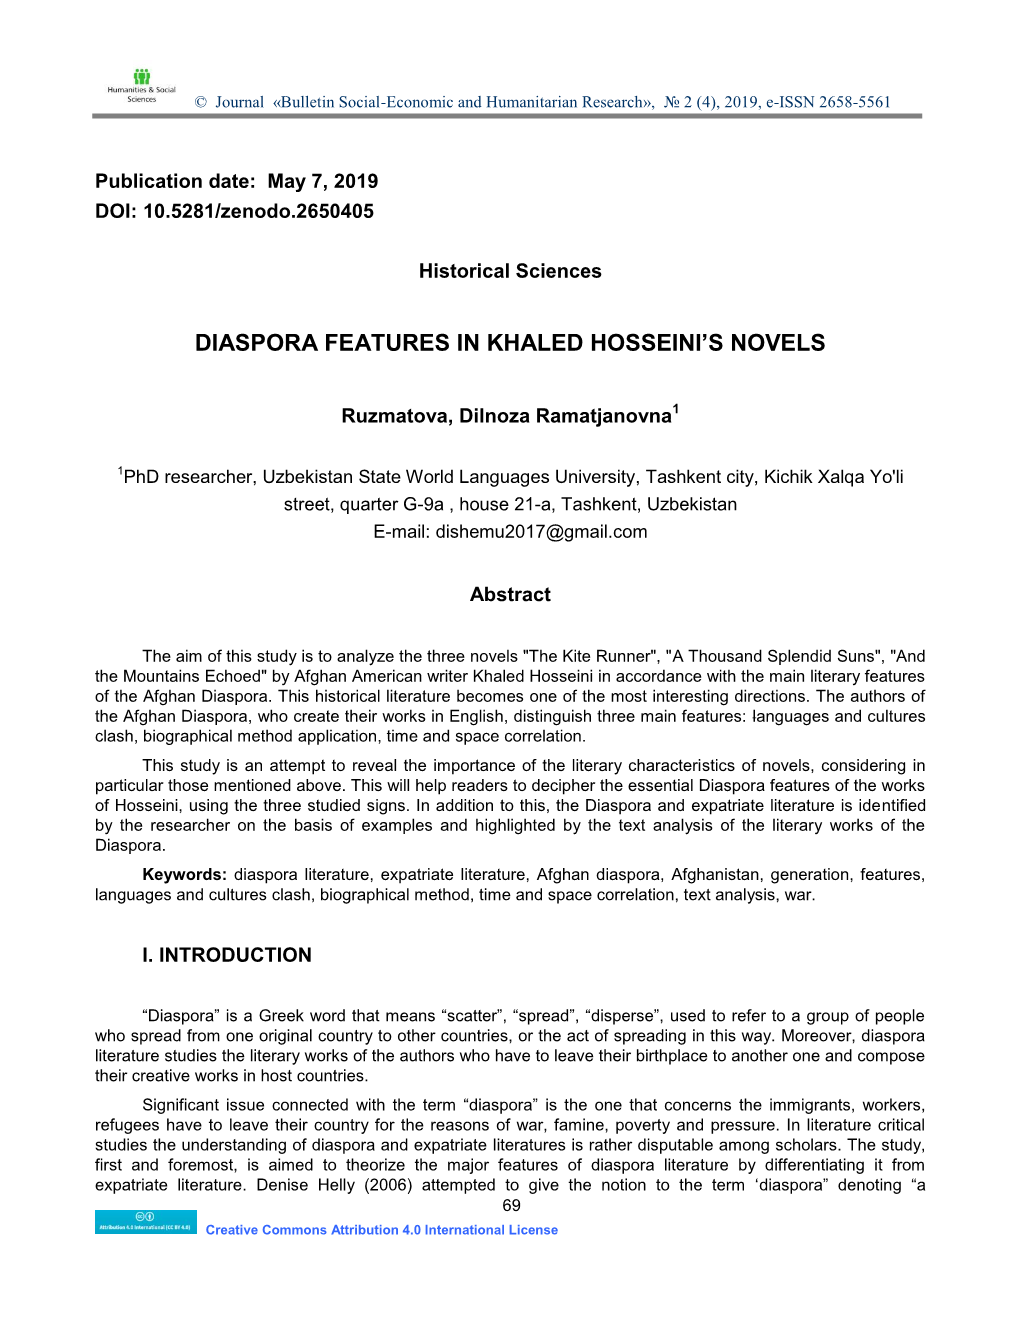 Diaspora Features in Khaled Hosseini's Novels